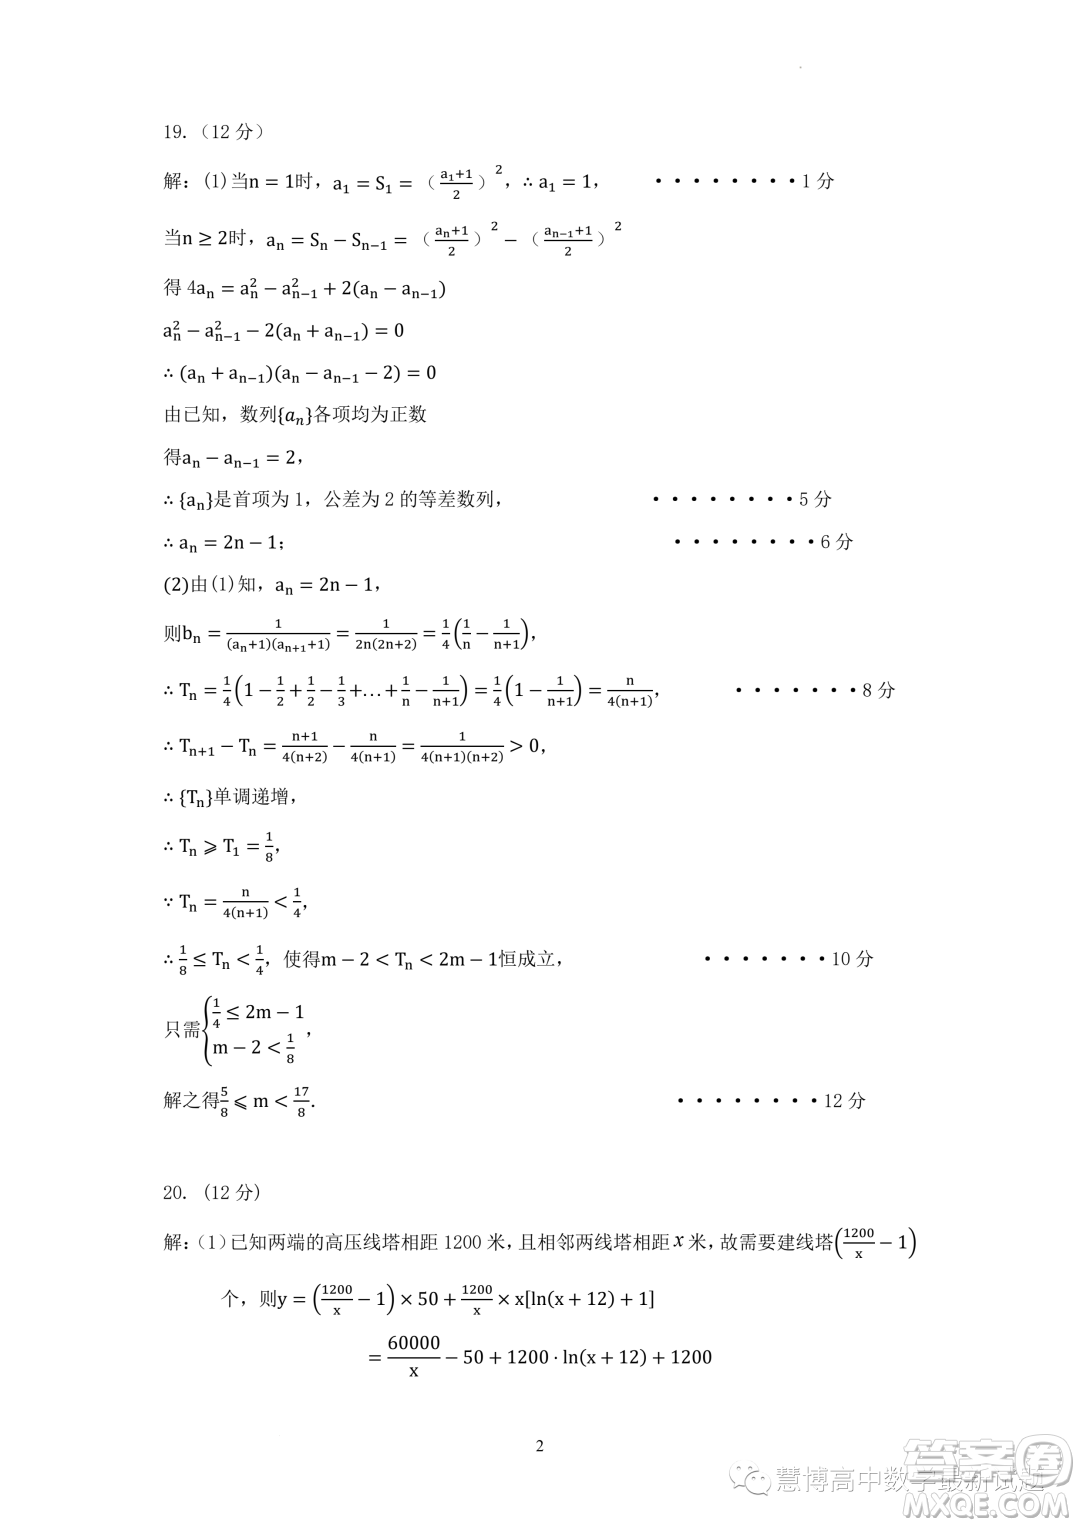 武汉中学2022-2023学年高二5月月考数学试题答案